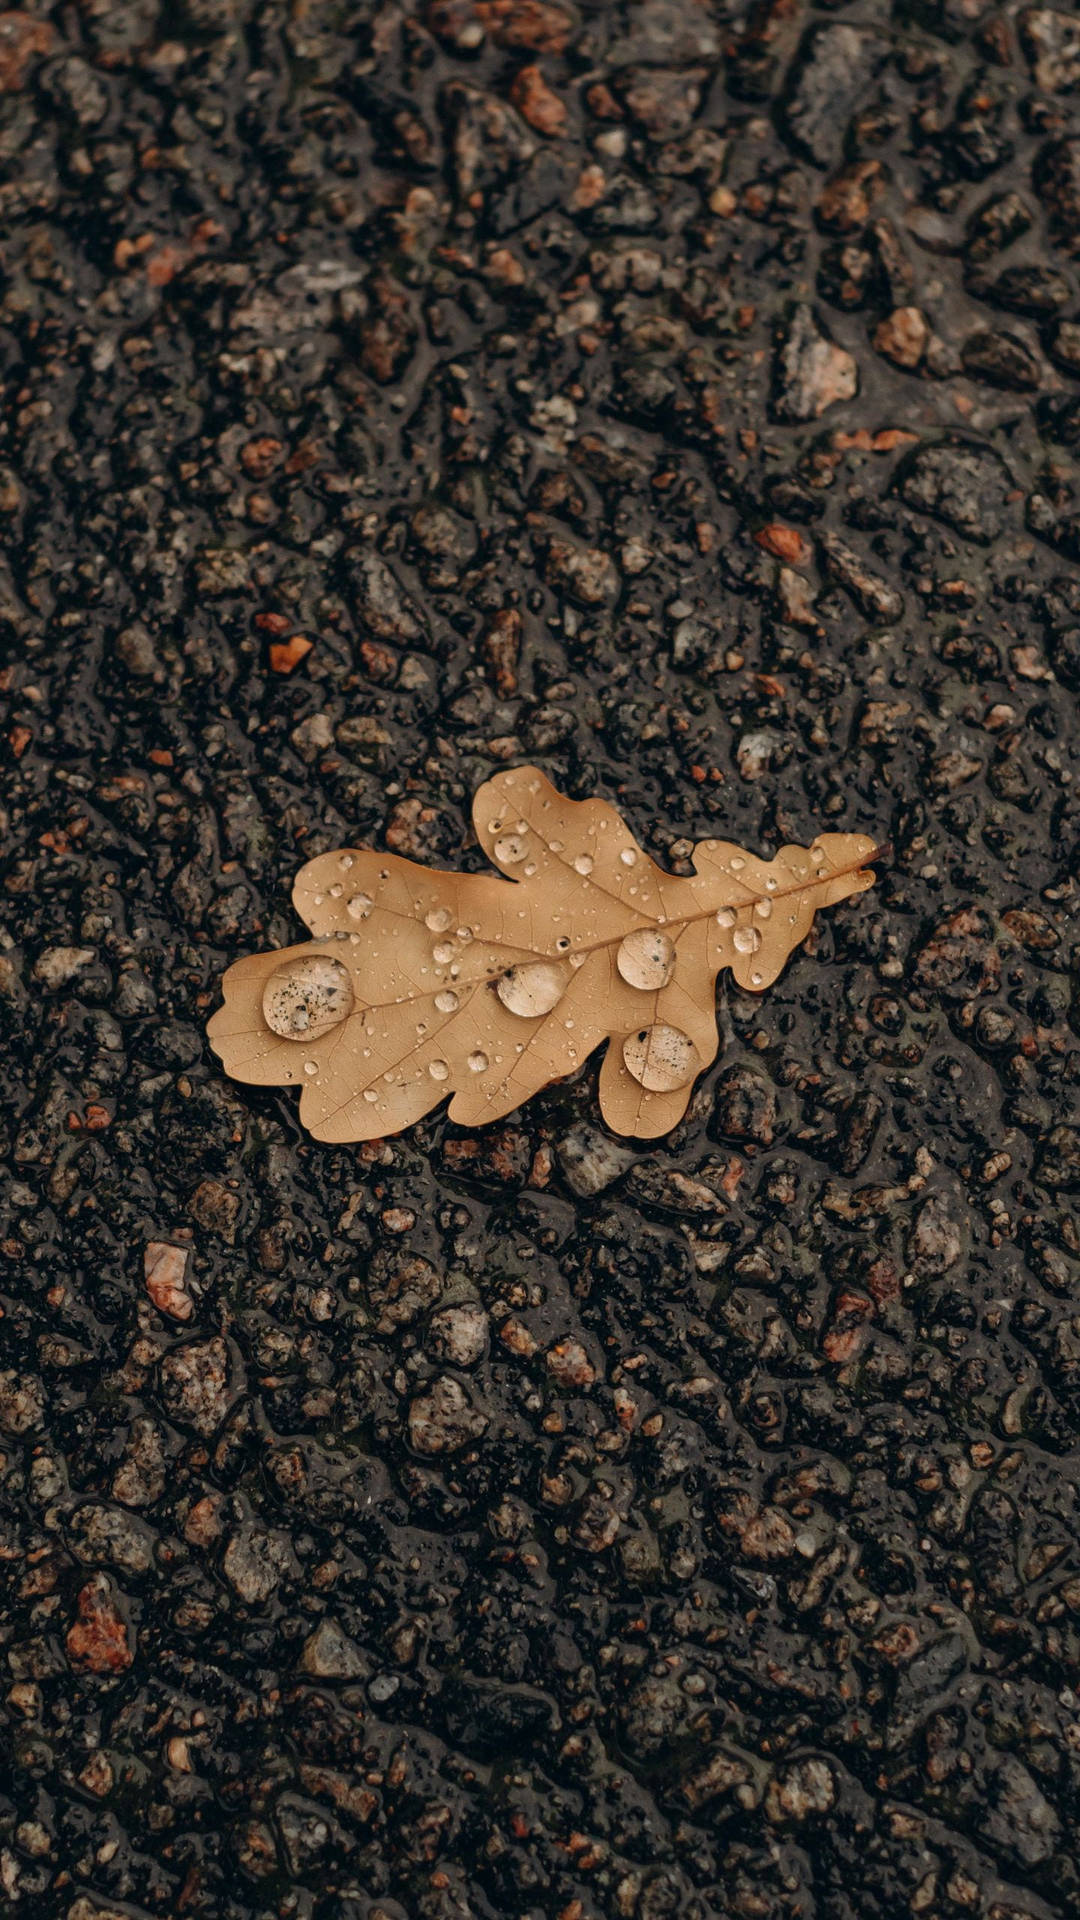 Samsung A51 Wet Autumn Leaf On Ground Wallpaper